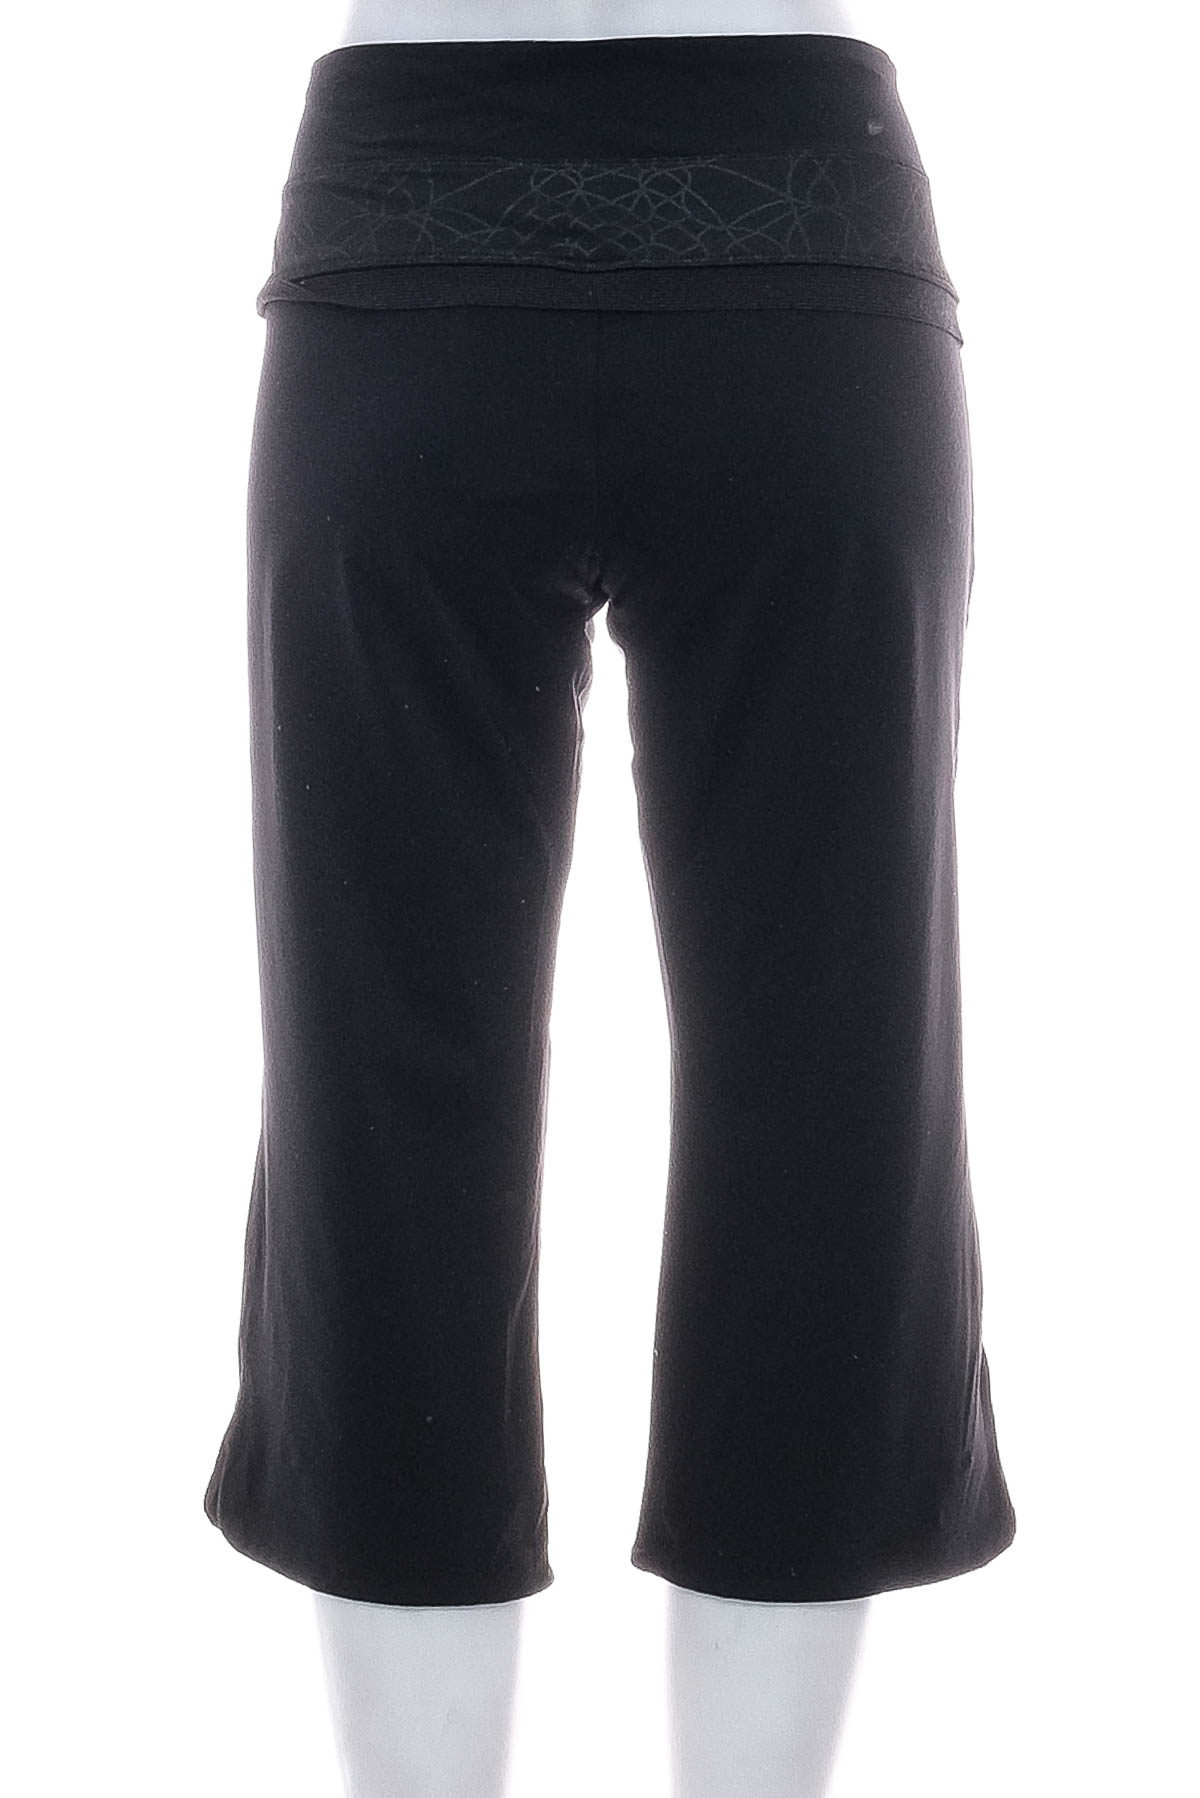 Krótkie spodnie damskie - Adidas - 1